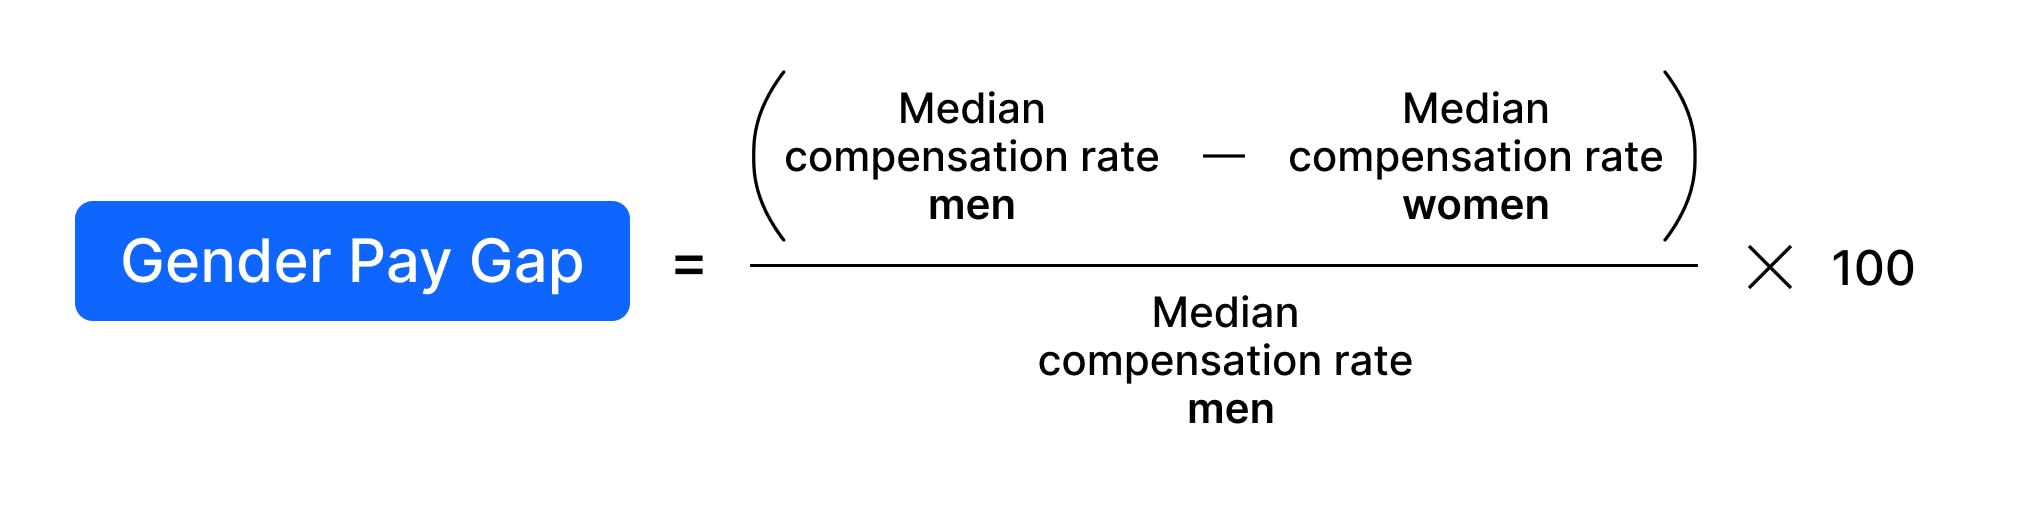 Gender pay gap (%) = (median compensation rate for men - median compensation rate for women) / median compensation rate for men x 100